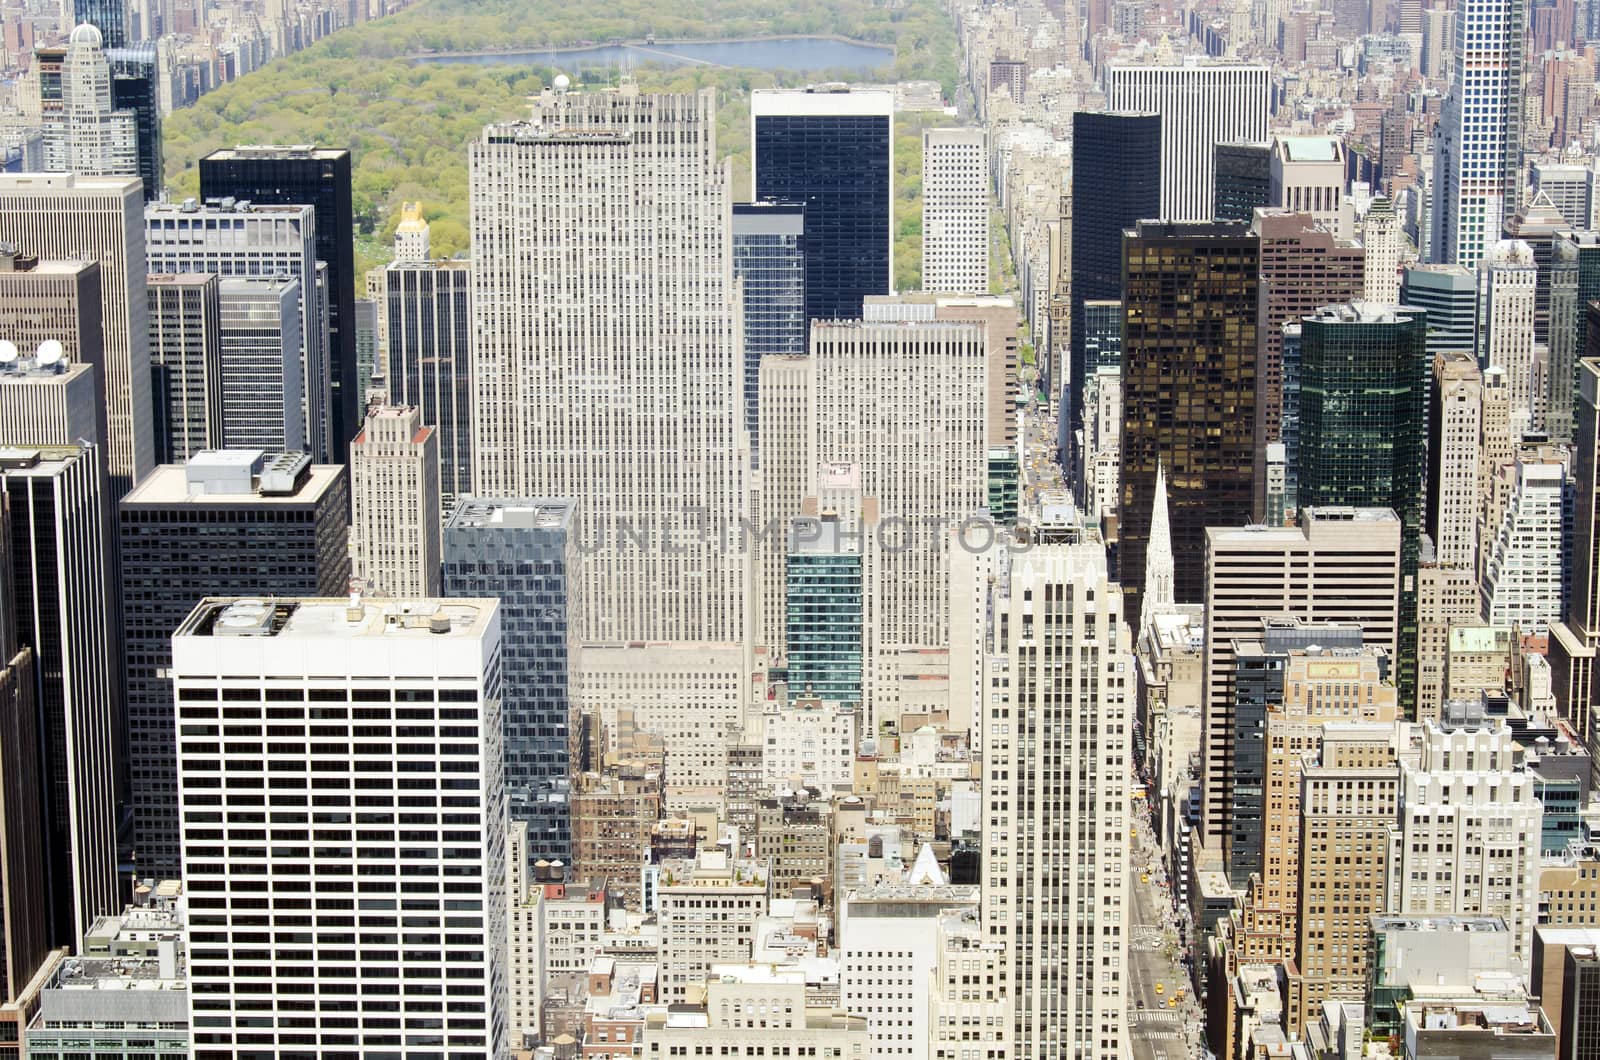 aerial view of Manhattan buildings by Joeblack